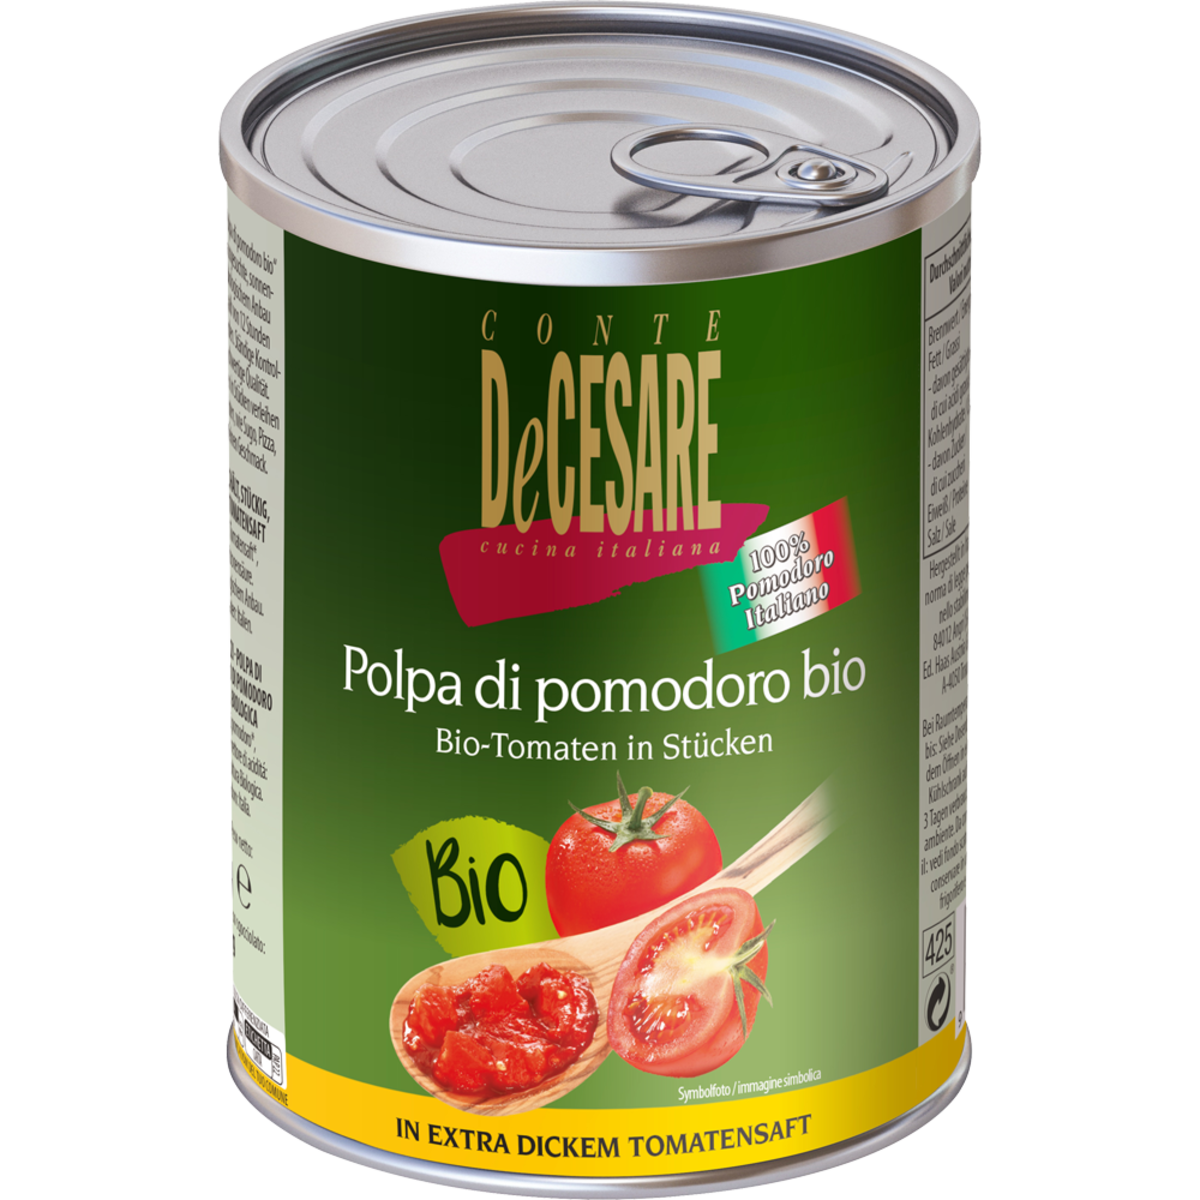 Polpa di Pomodoro gewürzt bio 400 g Dose